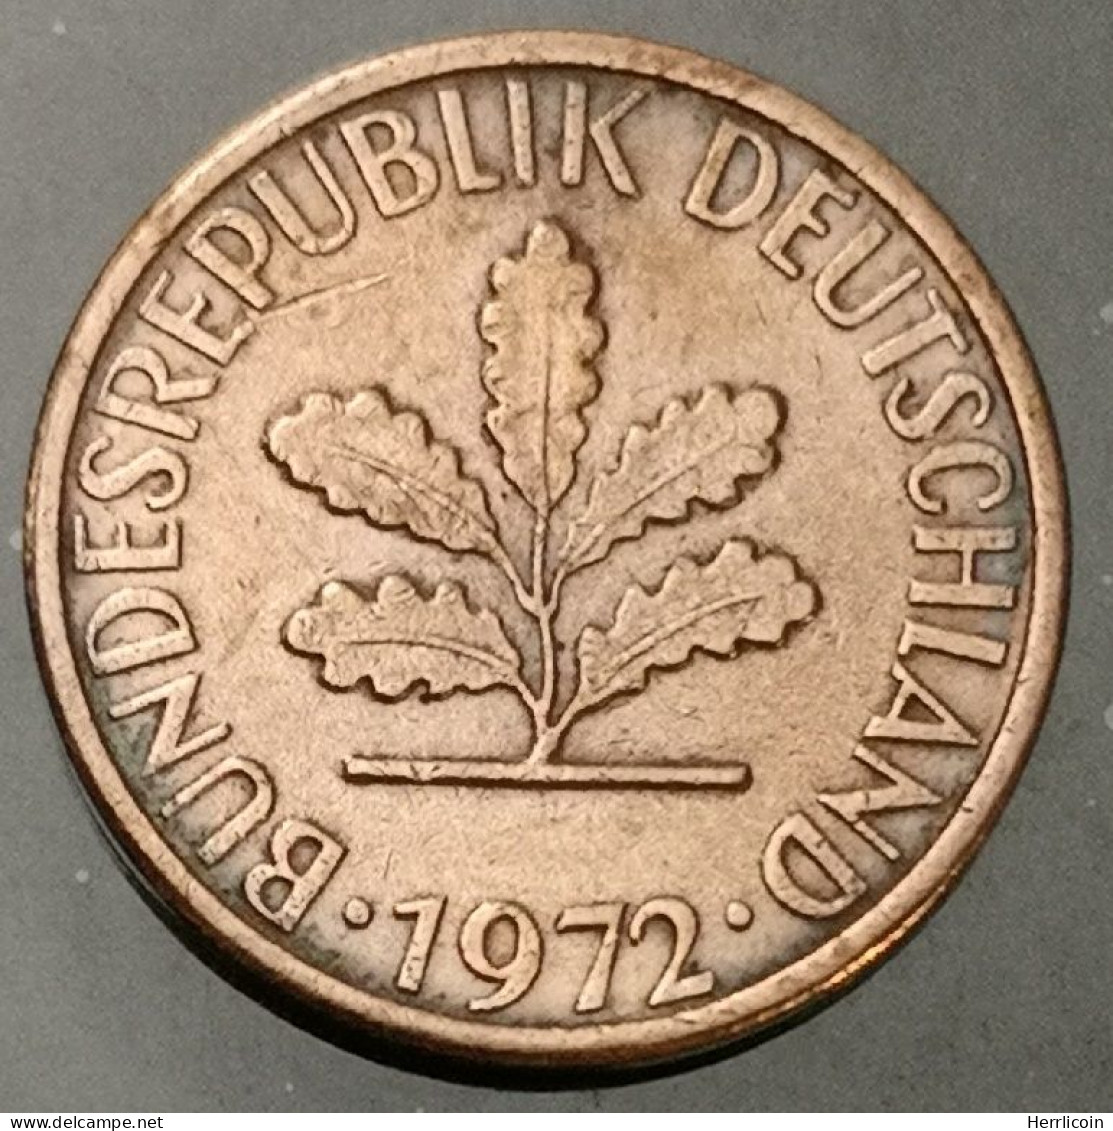 Monnaie Allemagne - 1972 F  - 1 Pfennig Bundesrepublik Deutschland - 1 Pfennig